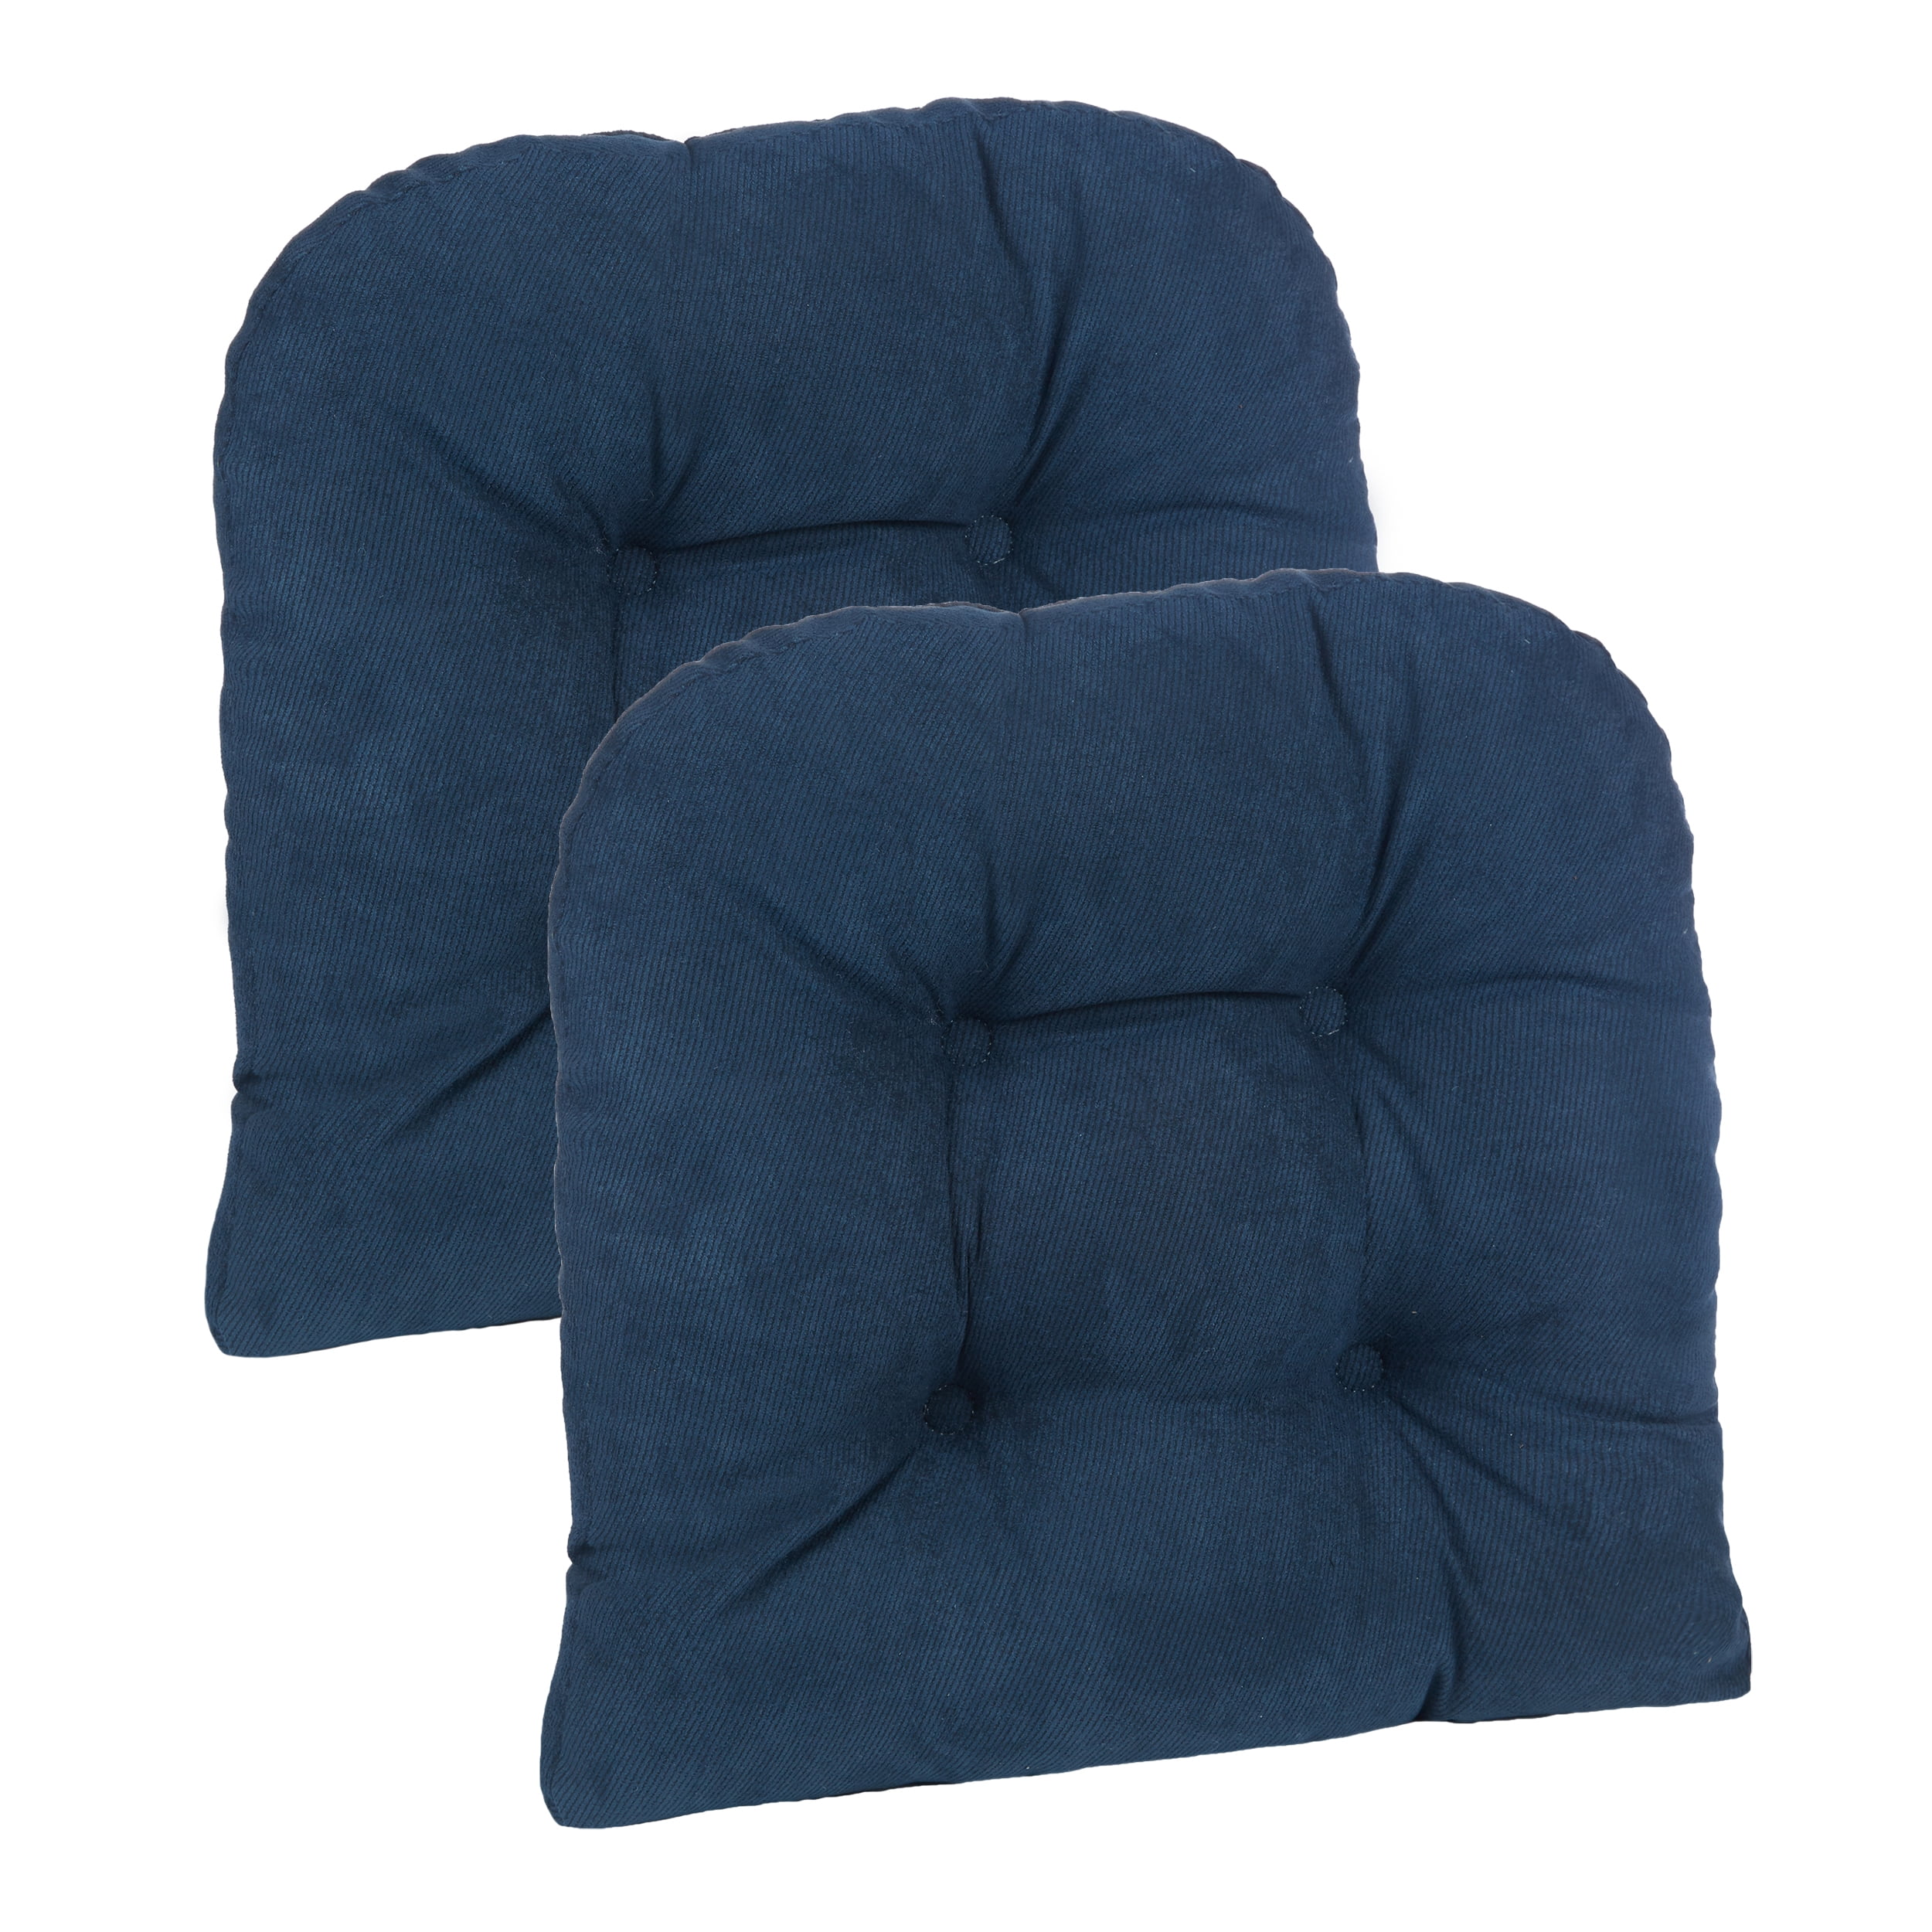 Klear Vu Gripper Non-Slip Saturn Tufted Universal Chair Cushions 15 x 15 Natural